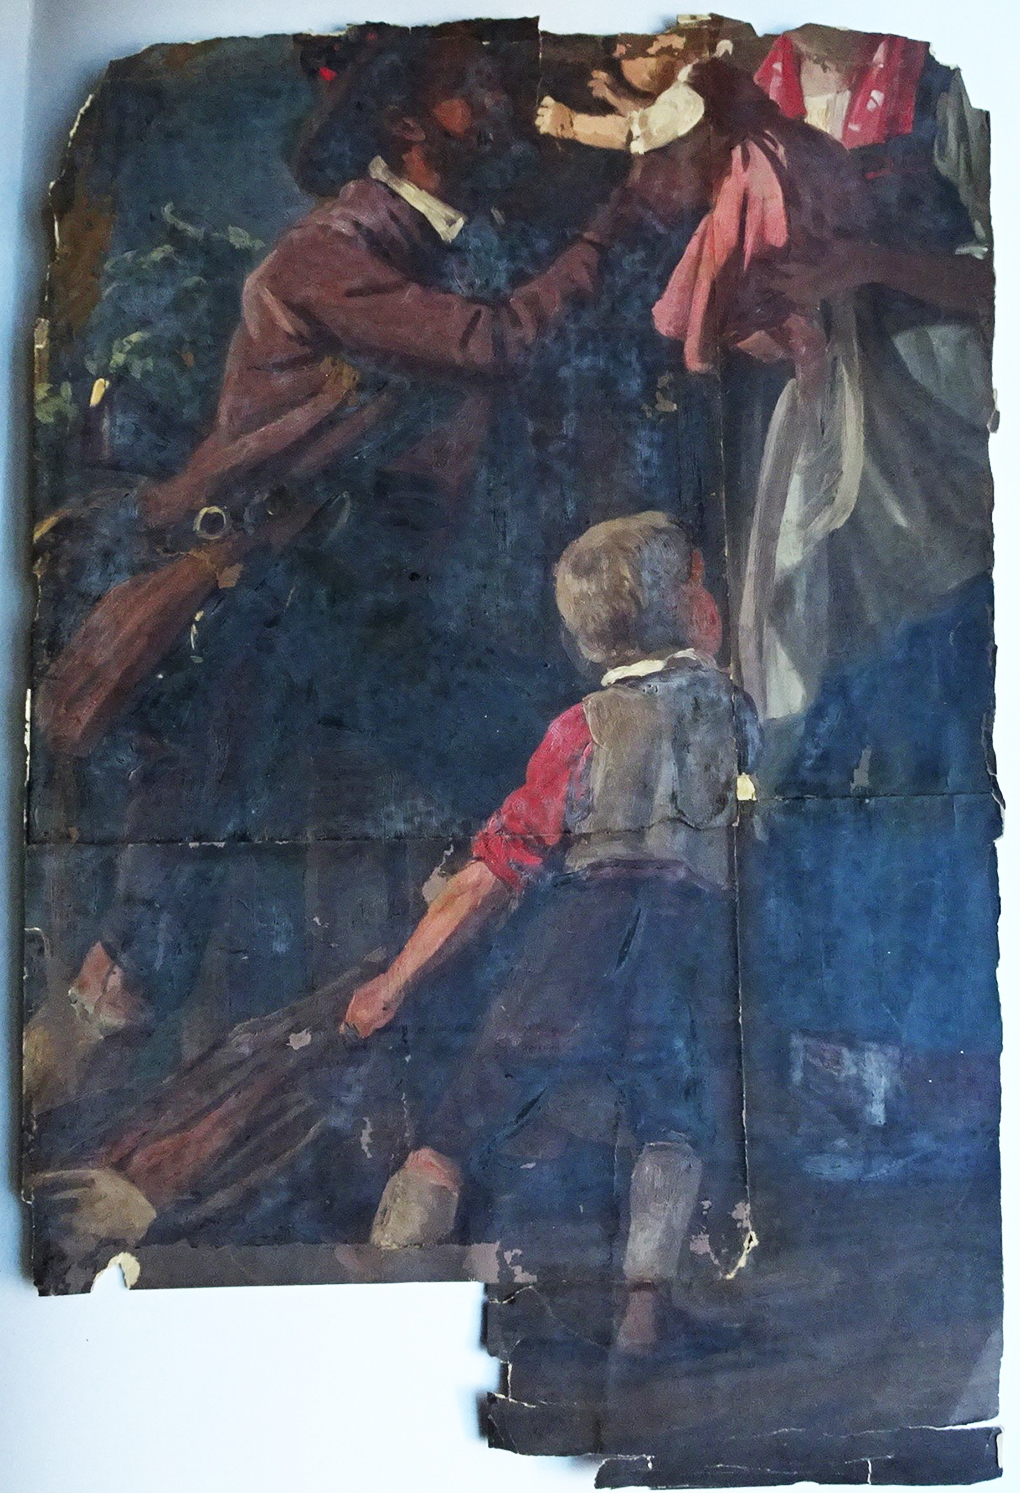 Ludwig Most, Powrót myśliwego, 1858, studium do obrazu o tym samym tytule, olej na papierze, przed konserwacją, Muzeum Narodowe w Szczecinie